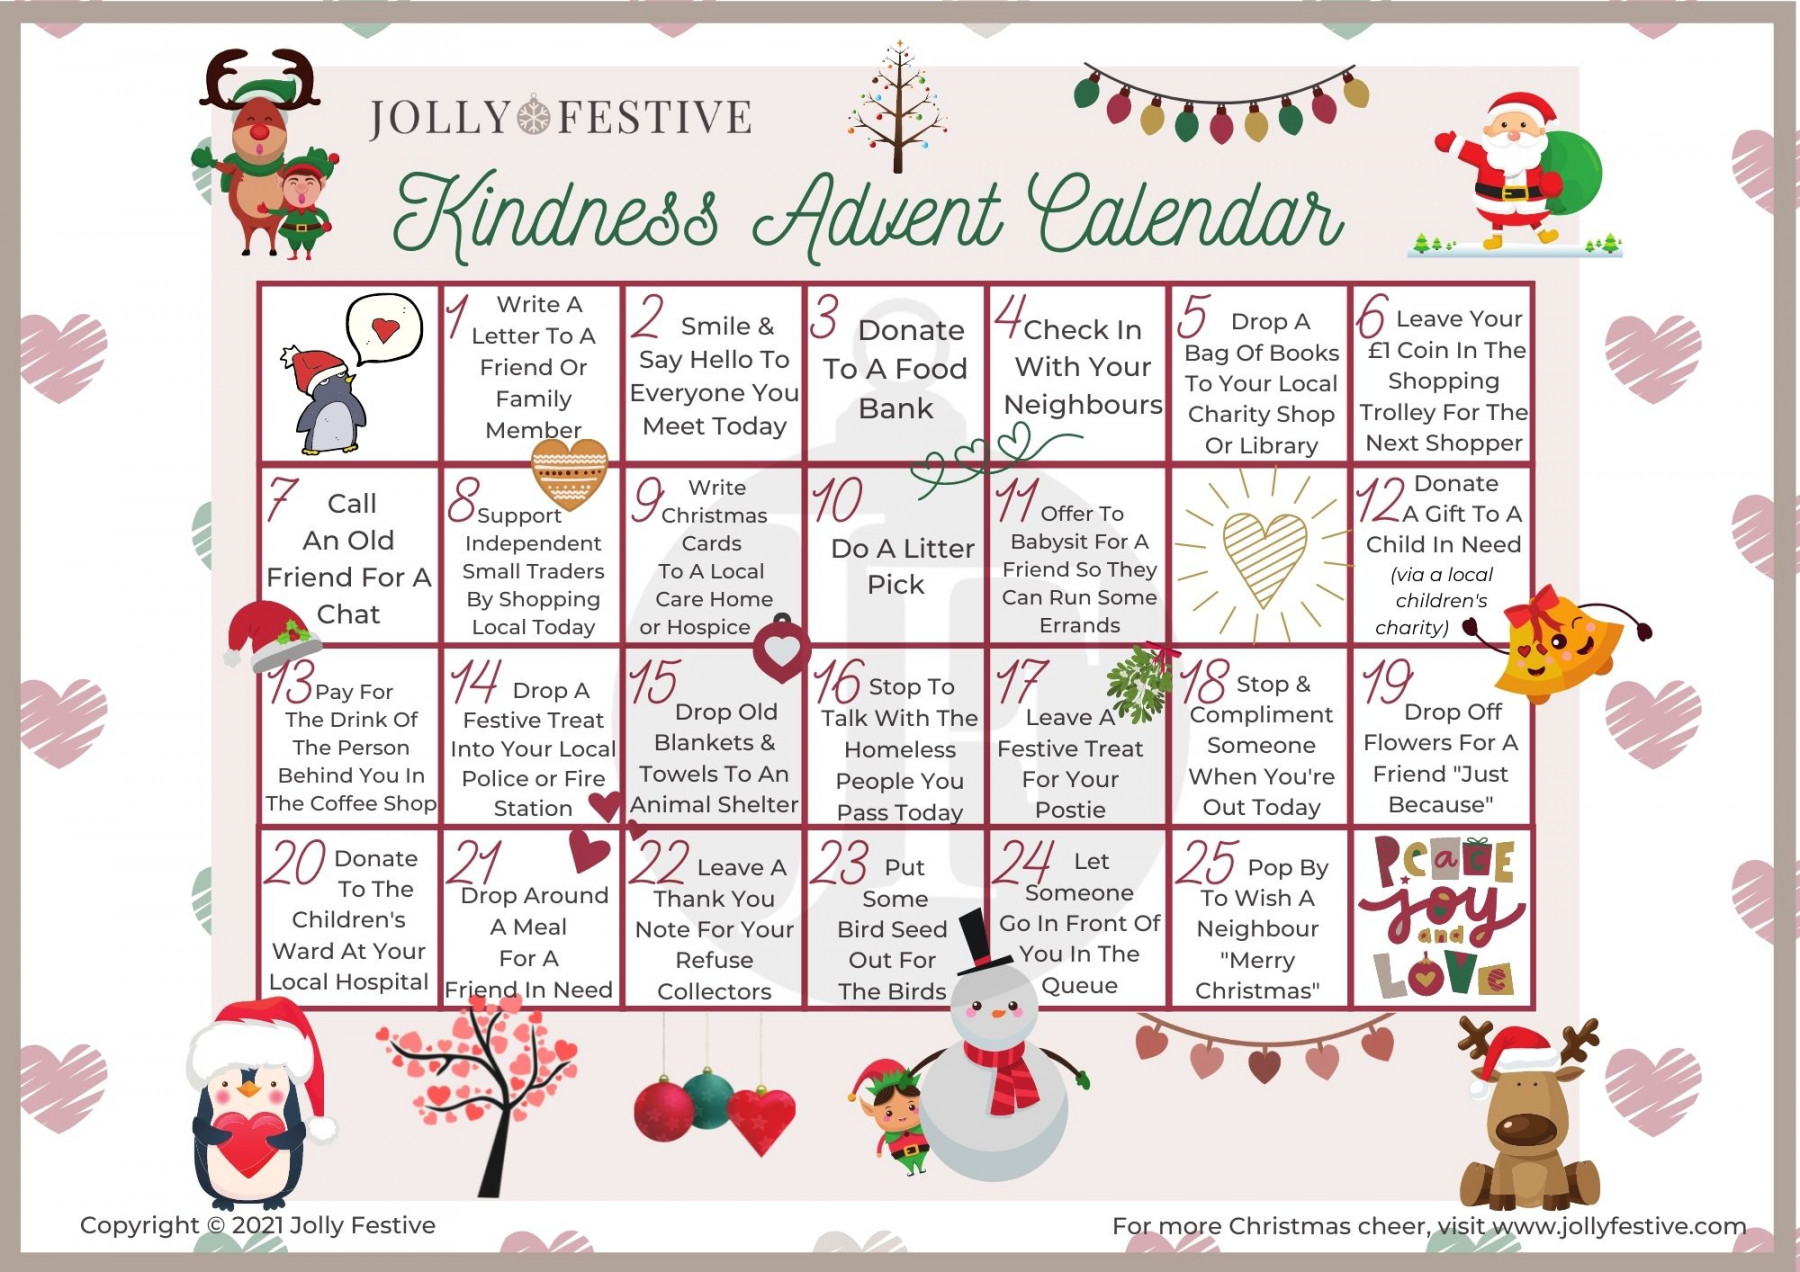 Spread Joy with a Kindness Advent Calendar - Jolly Festive